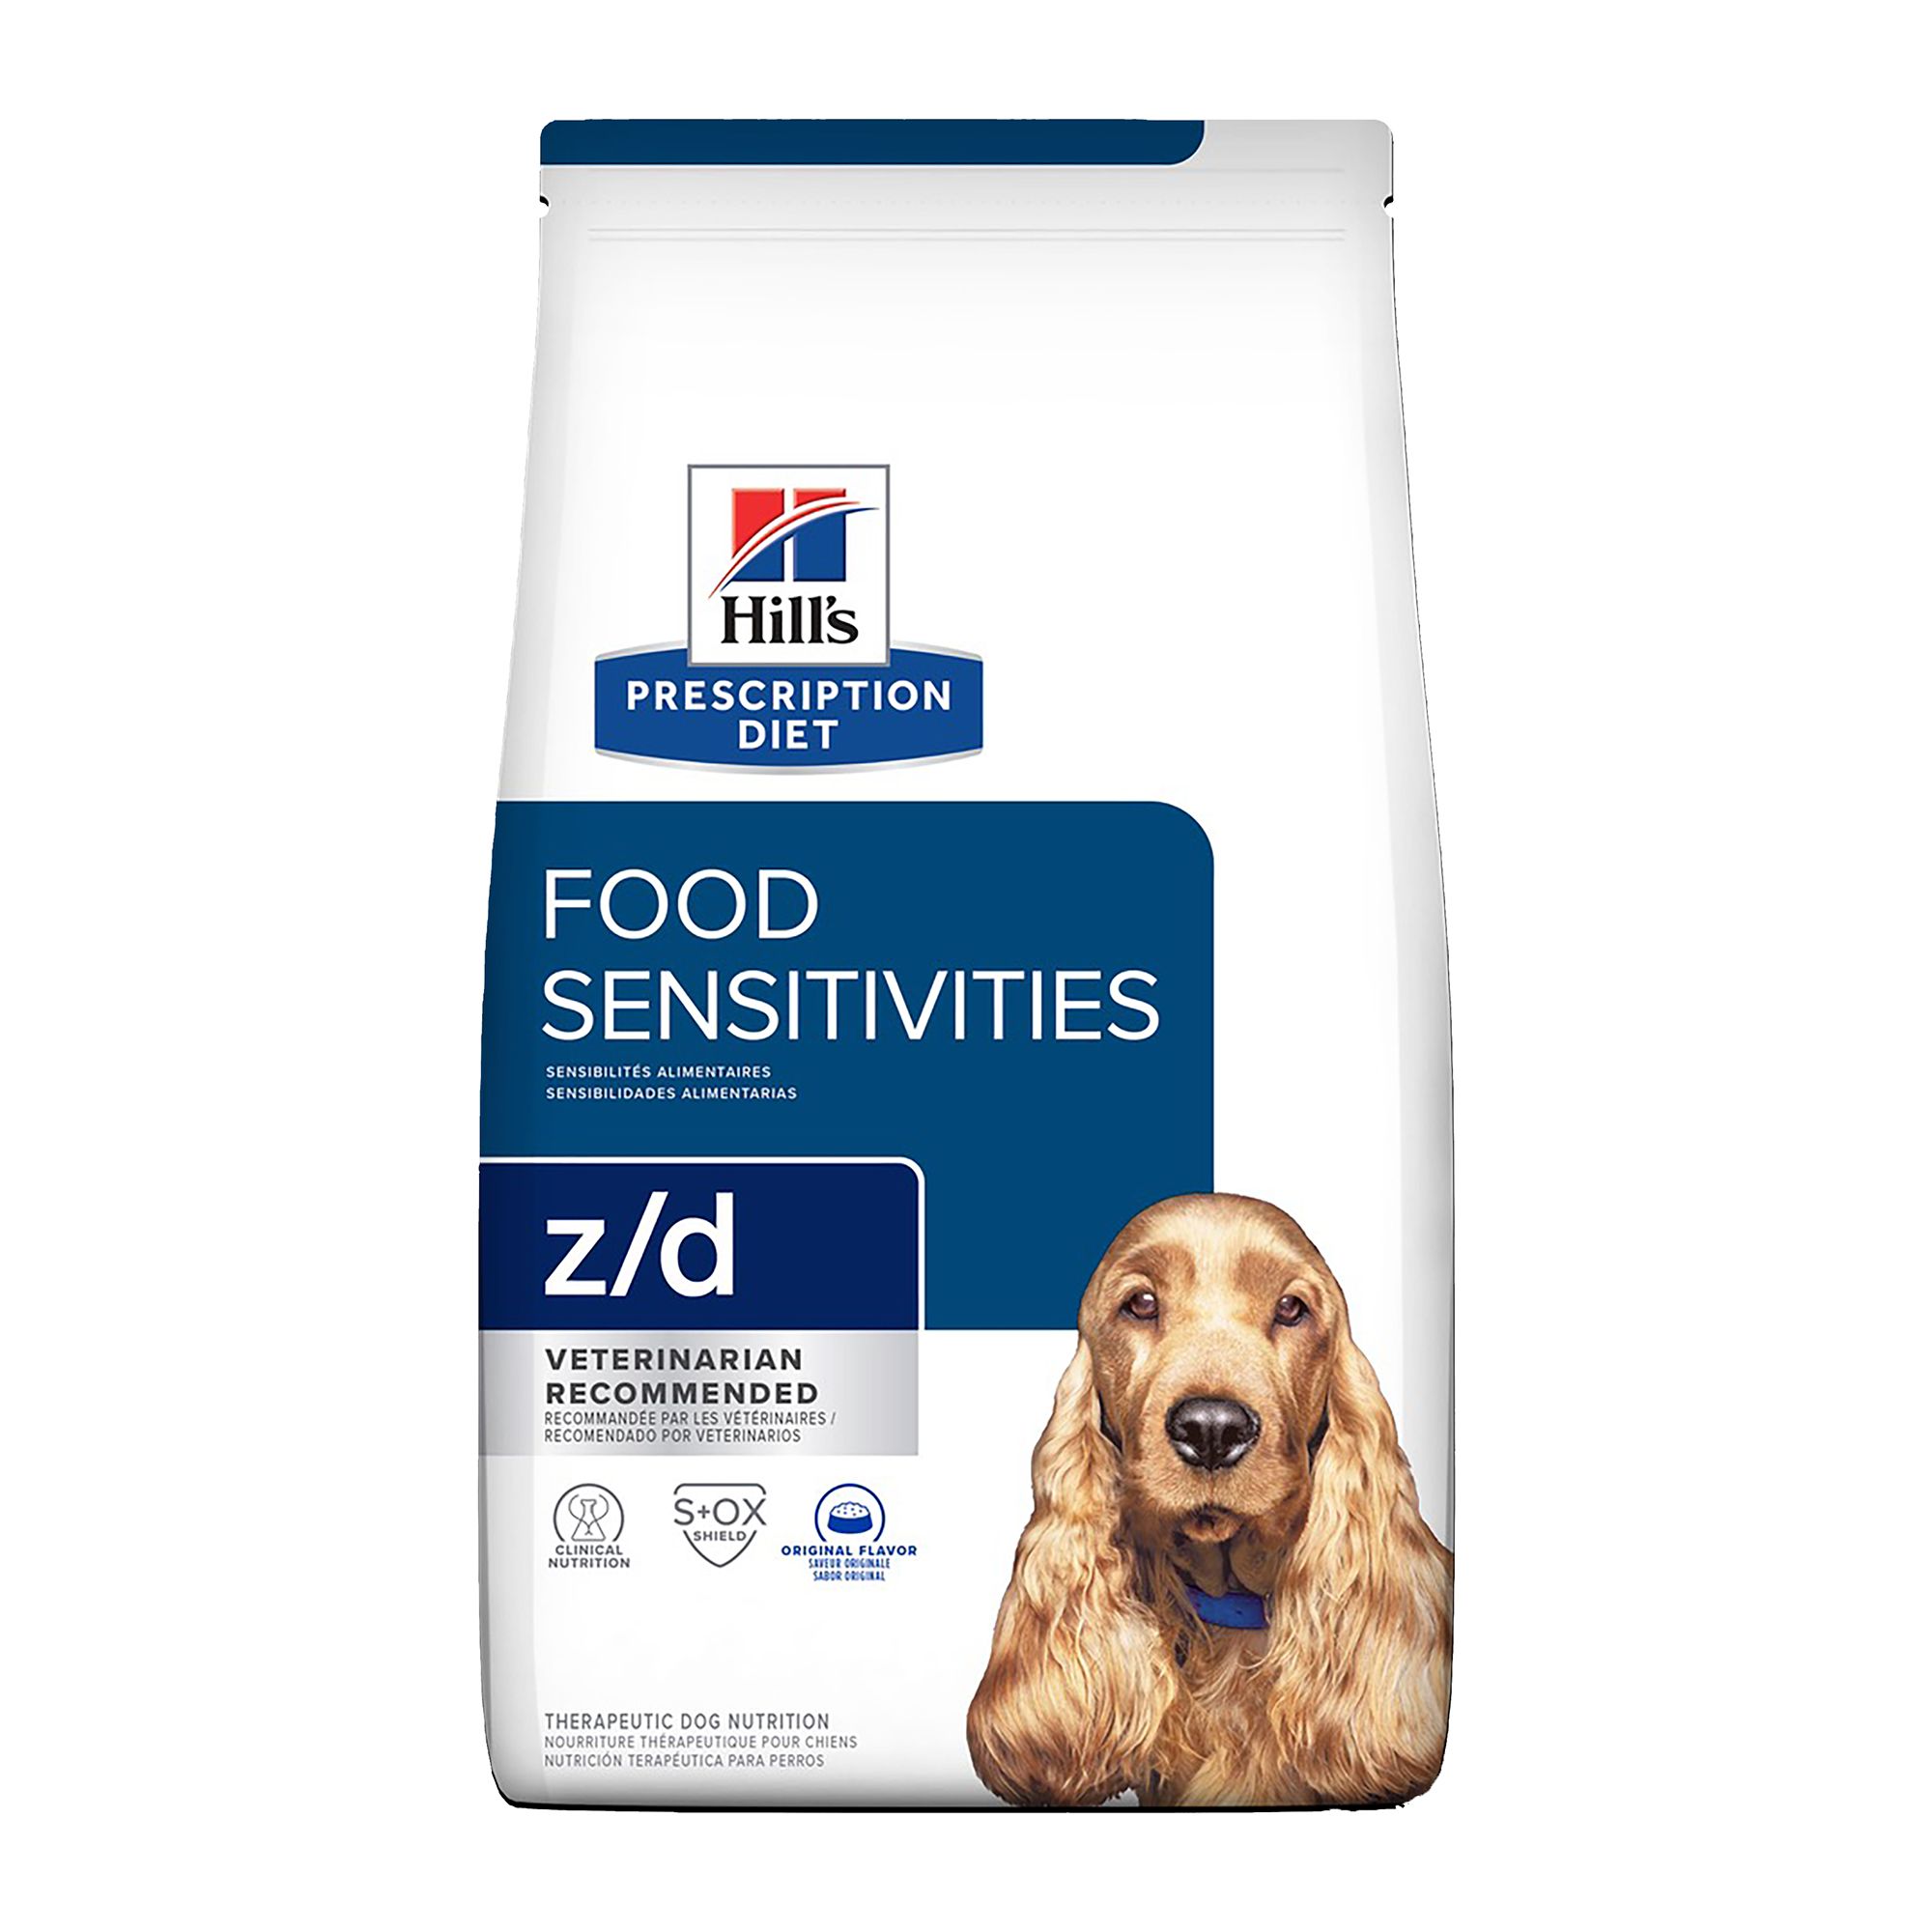 z/d Skin/Food Sensitivities Dog Food 